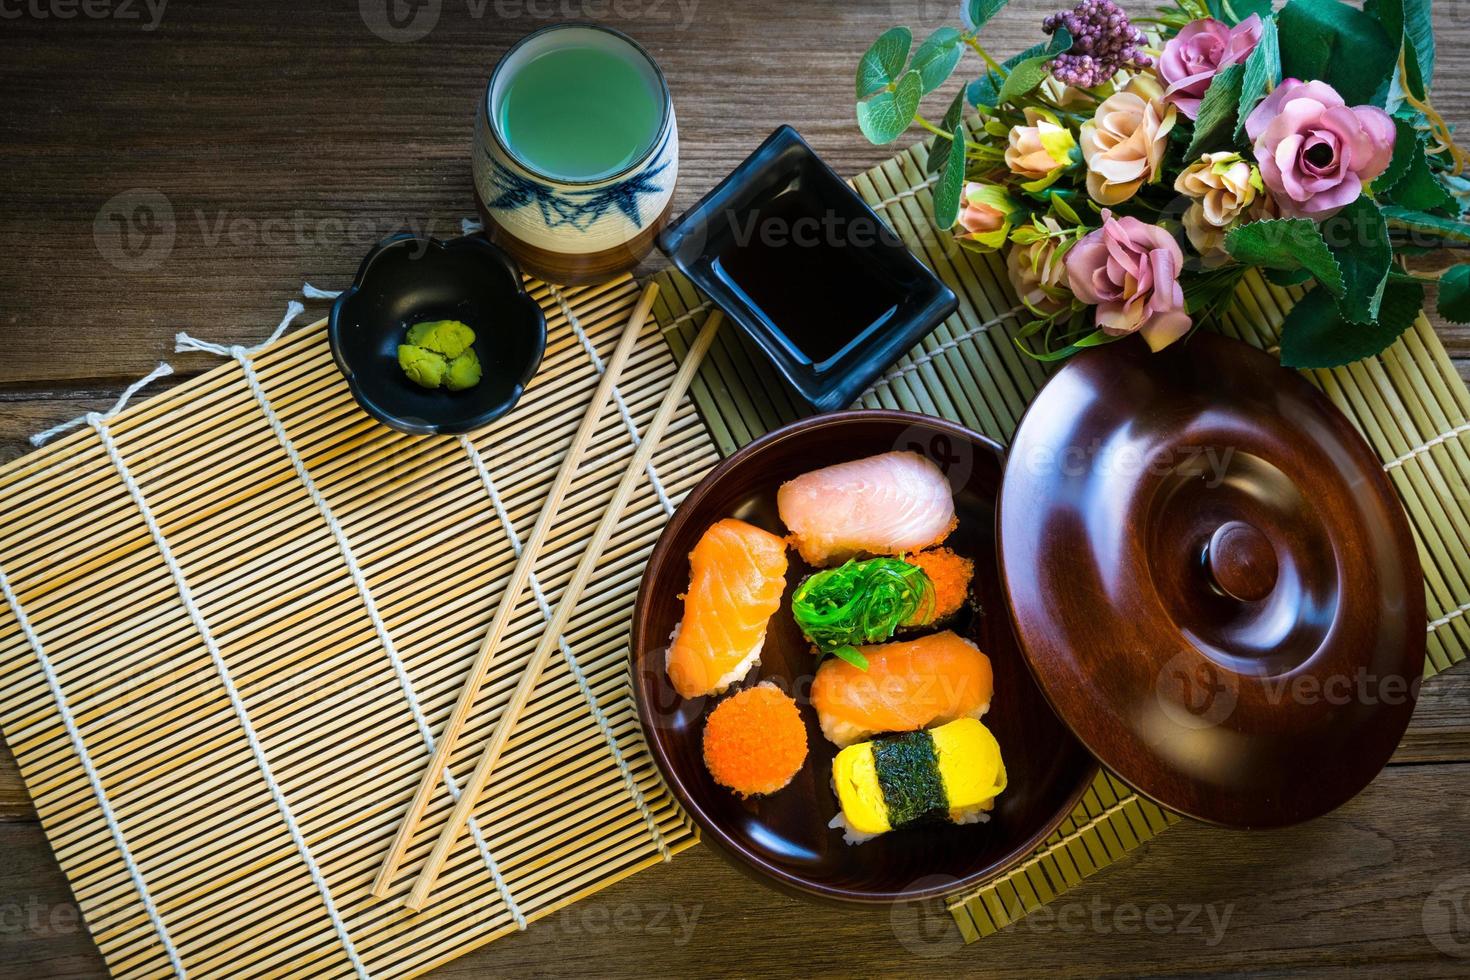 sushi servi sur table en bois photo